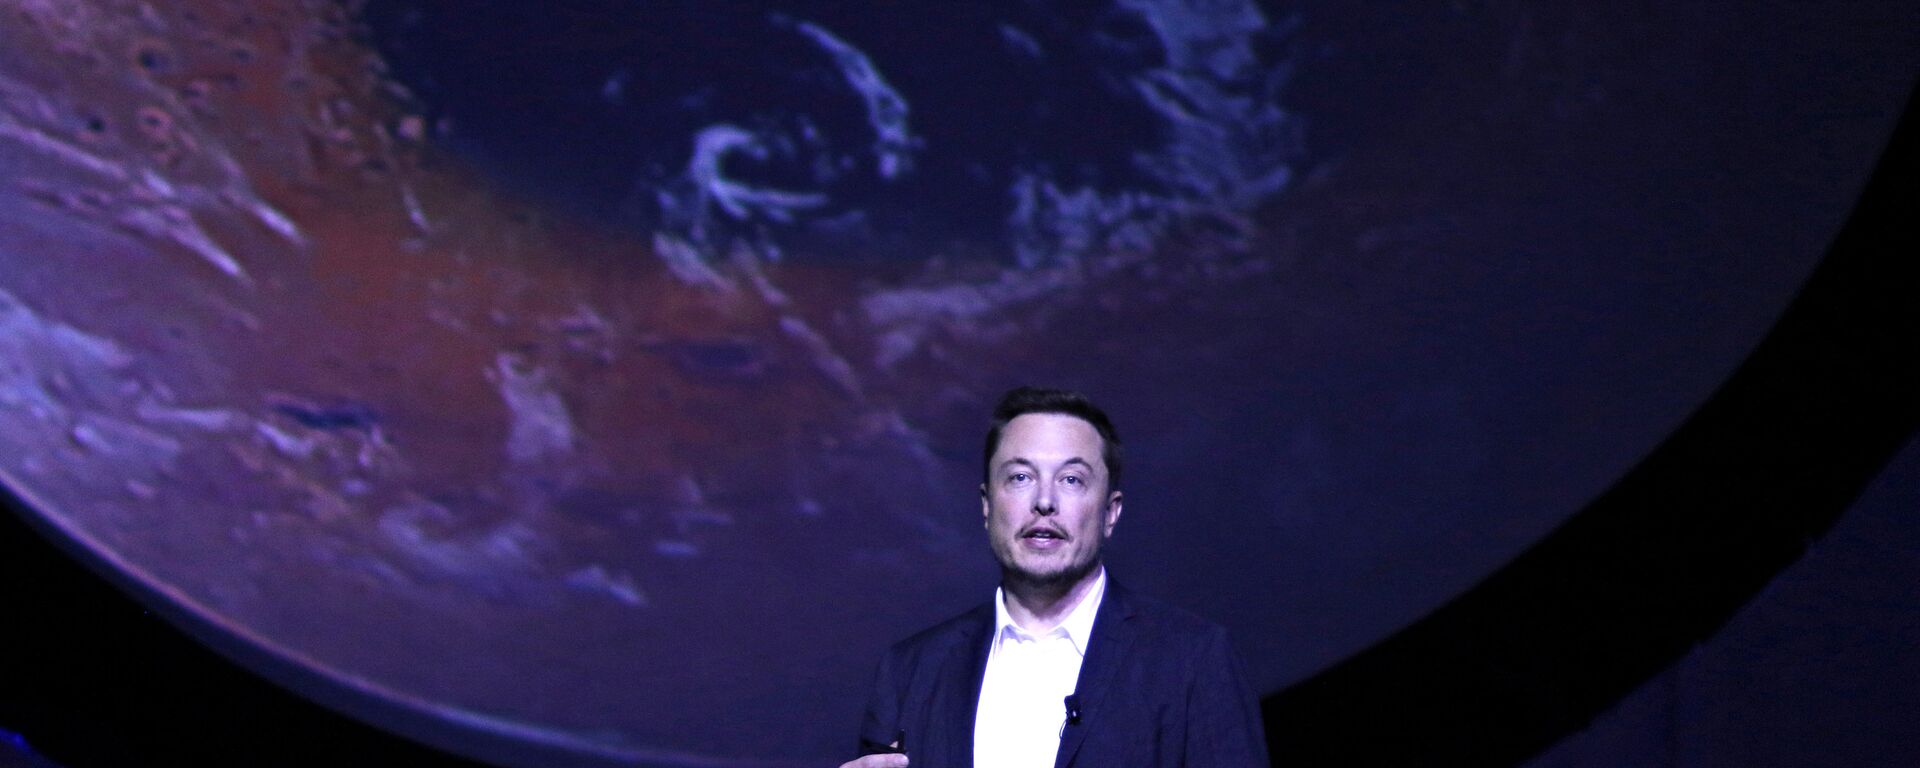 Chefe da corporação SpaceX Elon Musk revela planos de colonizar Marte, México, 27 de setembro de 2016 - Sputnik Brasil, 1920, 19.11.2021